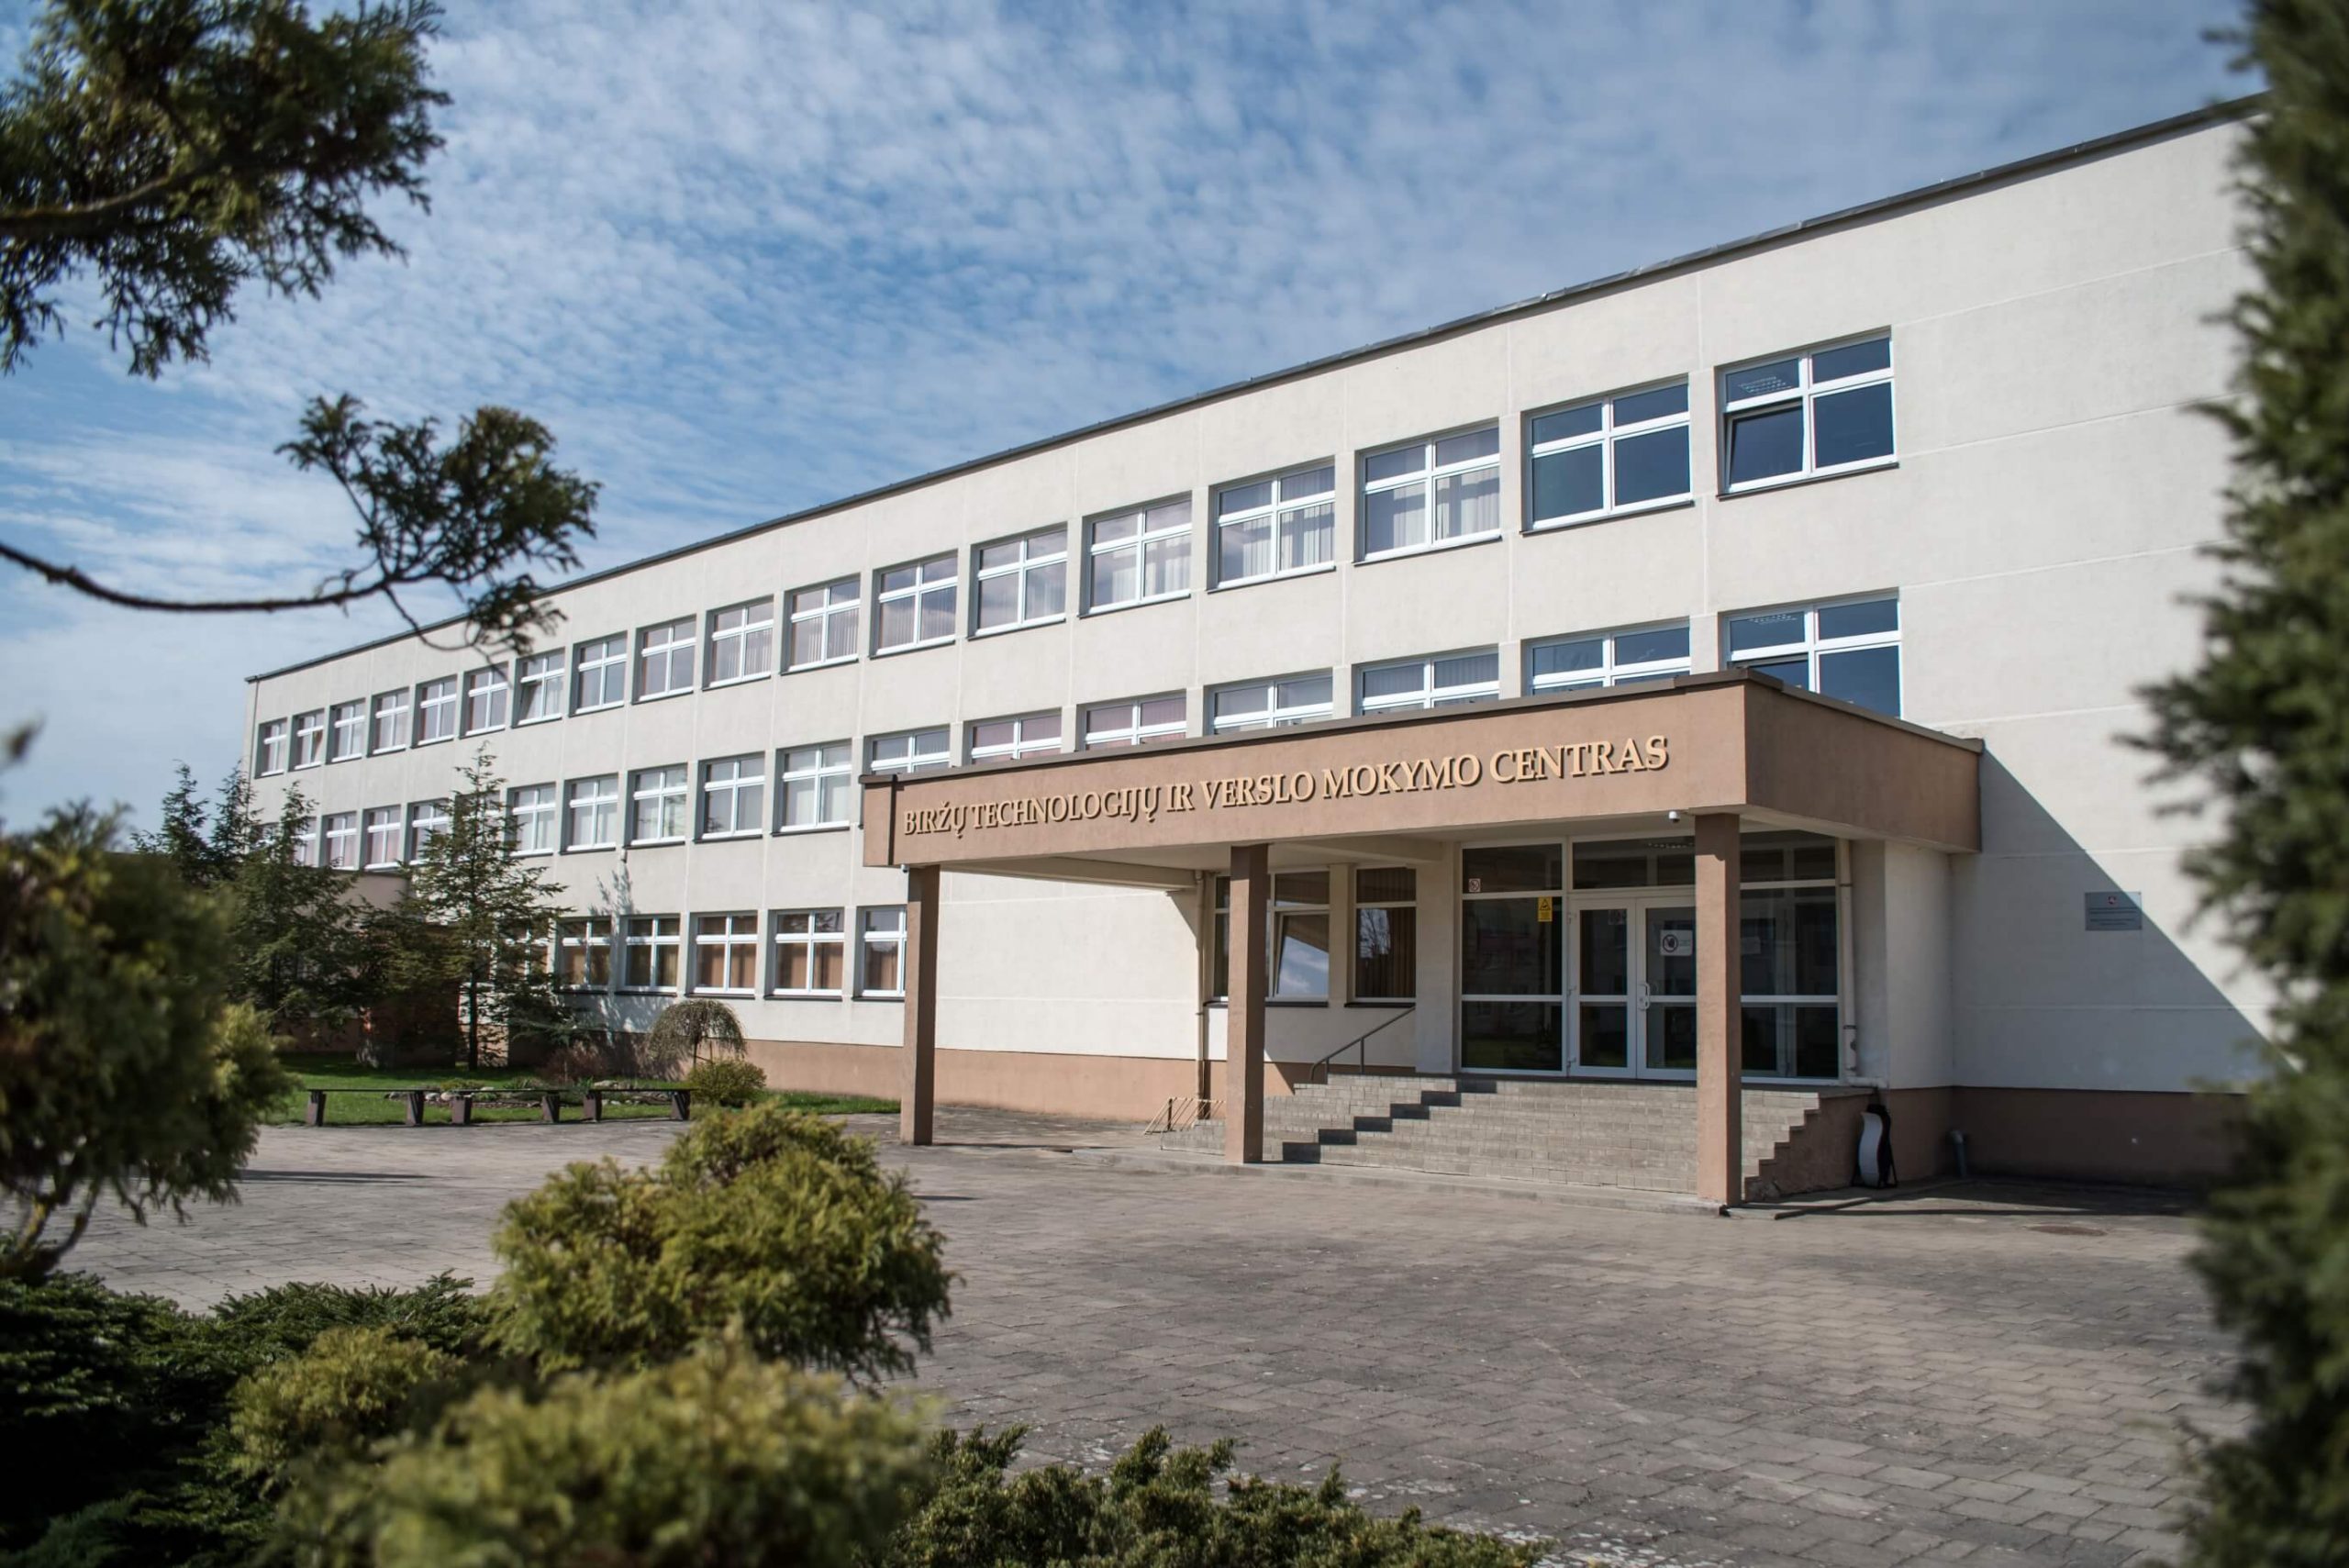 Biržų technologijų ir verslo mokymo centras